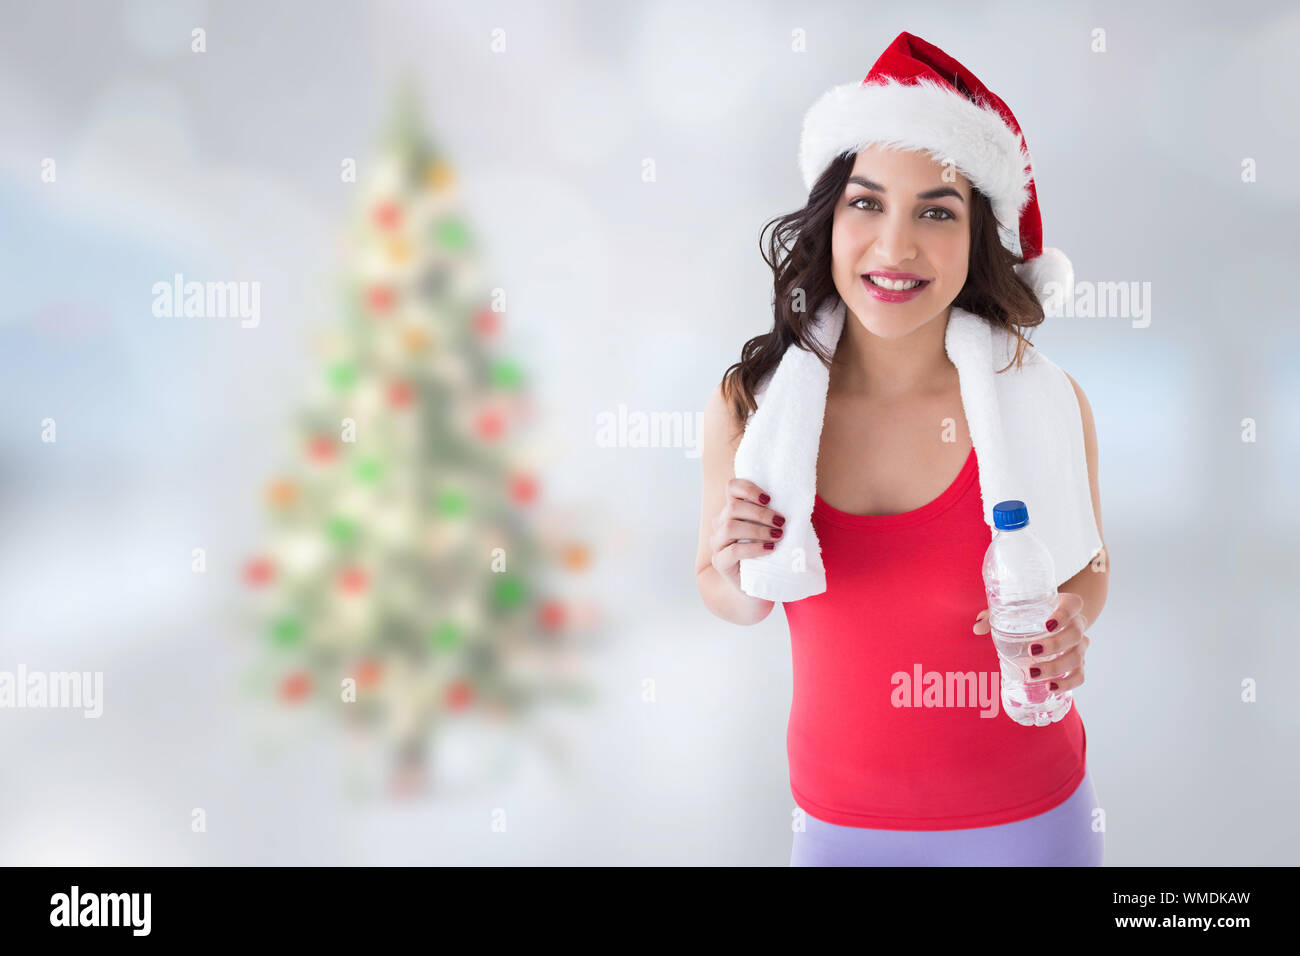 Festive fit brunette holding bottle against blurry christmas tree in room Stock Photo